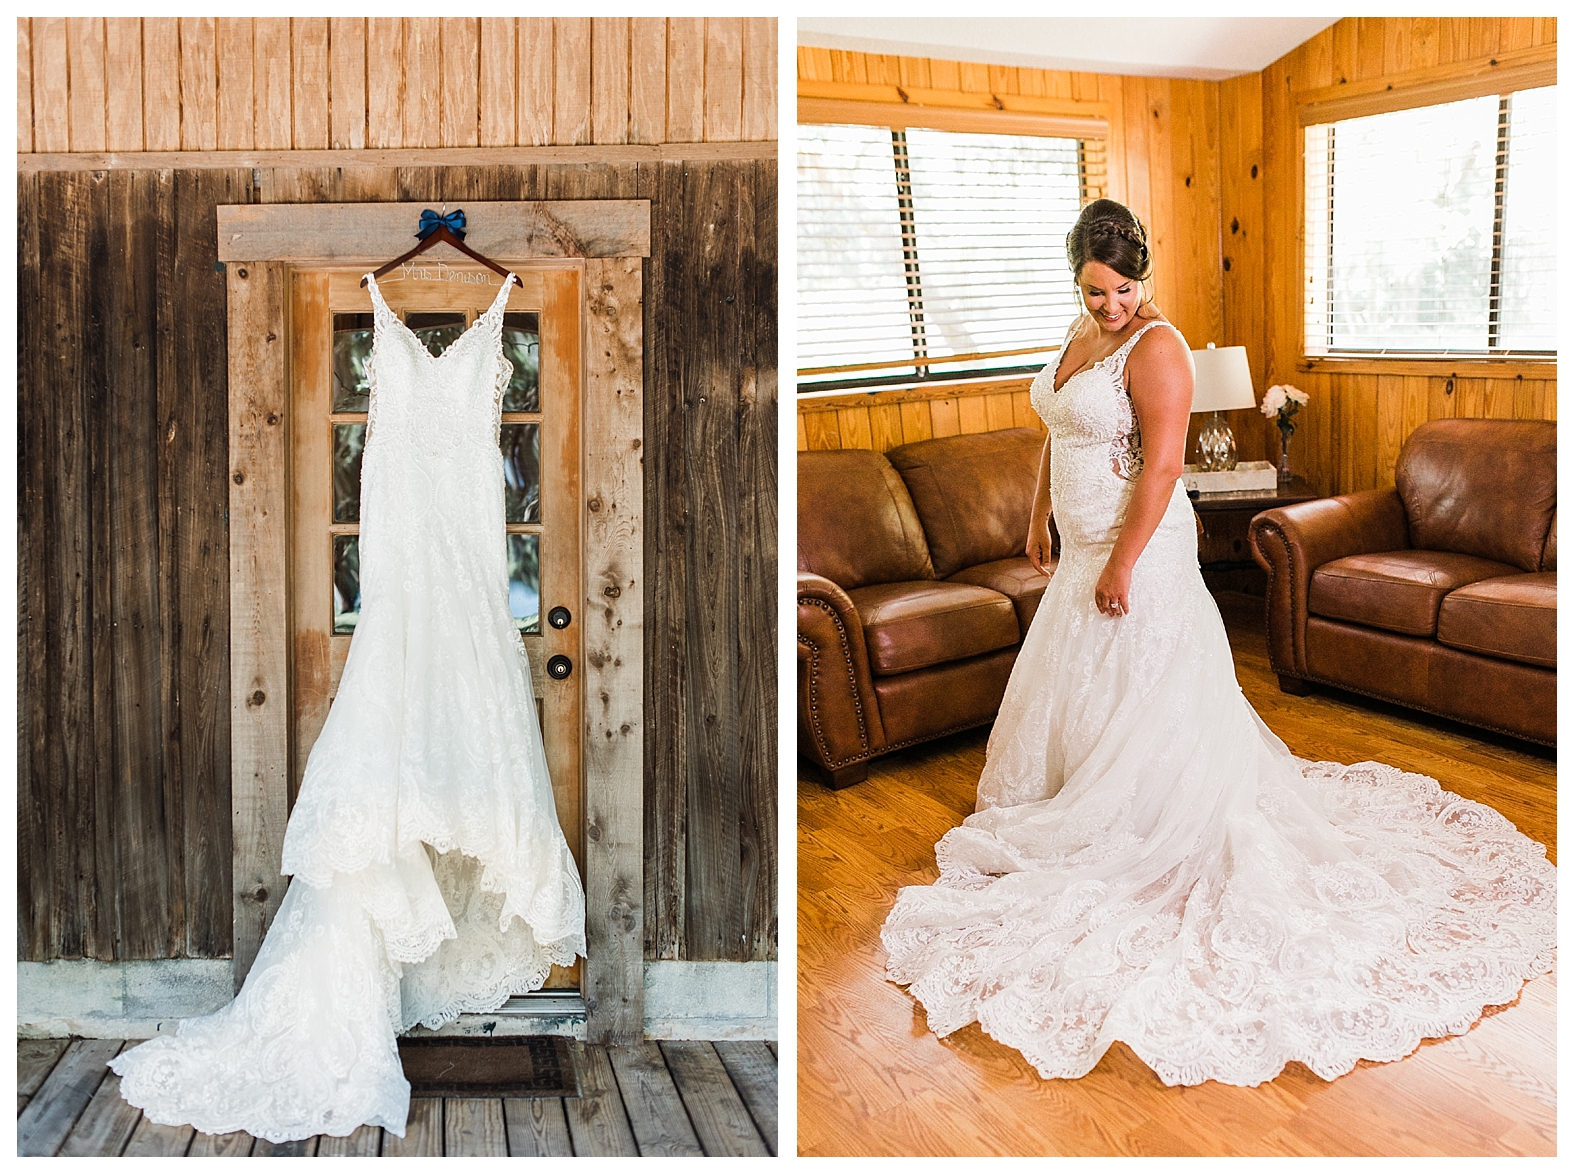 Wedding at The Barn at Crescent Lake - Sara and Chad - Tampa Wedding Photographer